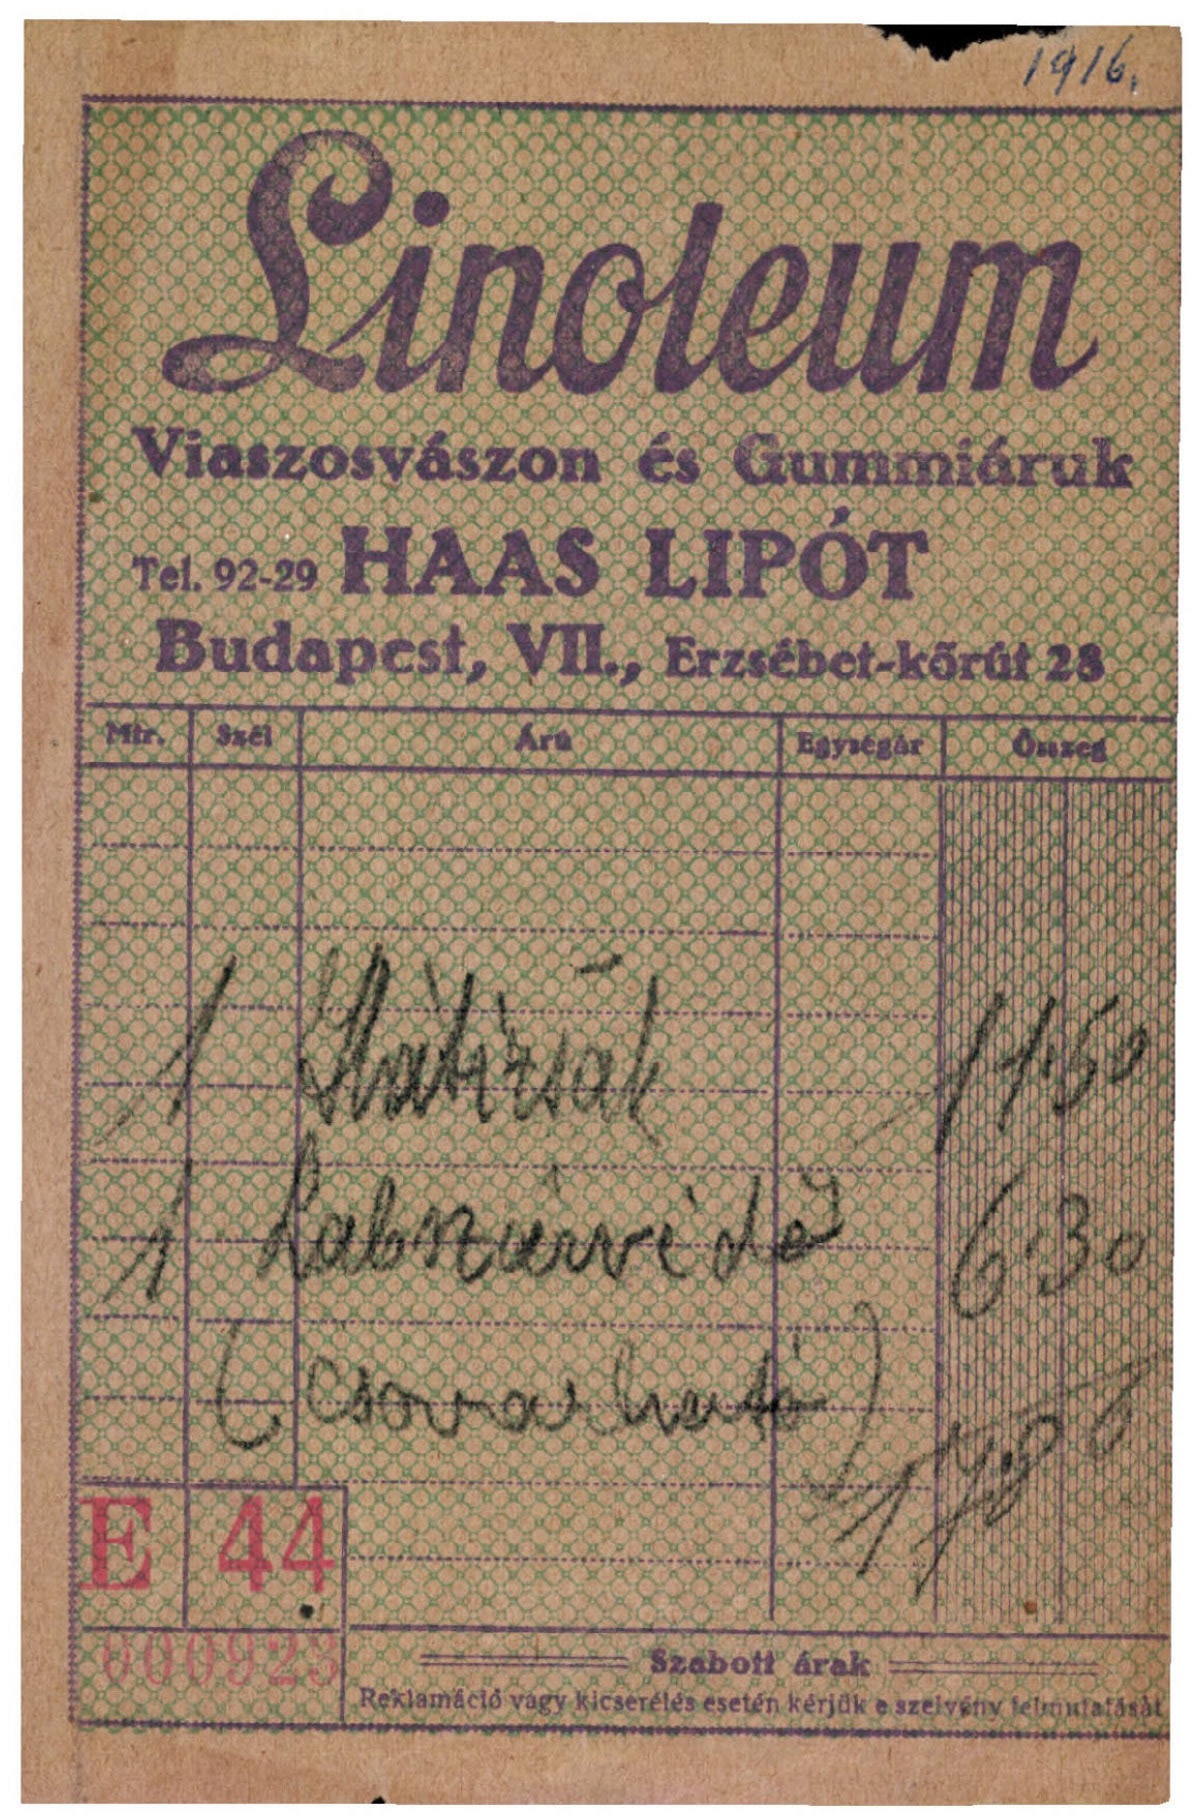 Haas Lipót, Linoleum viaszosvászon és gummiáruk (Magyar Kereskedelmi és Vendéglátóipari Múzeum CC BY-NC-SA)